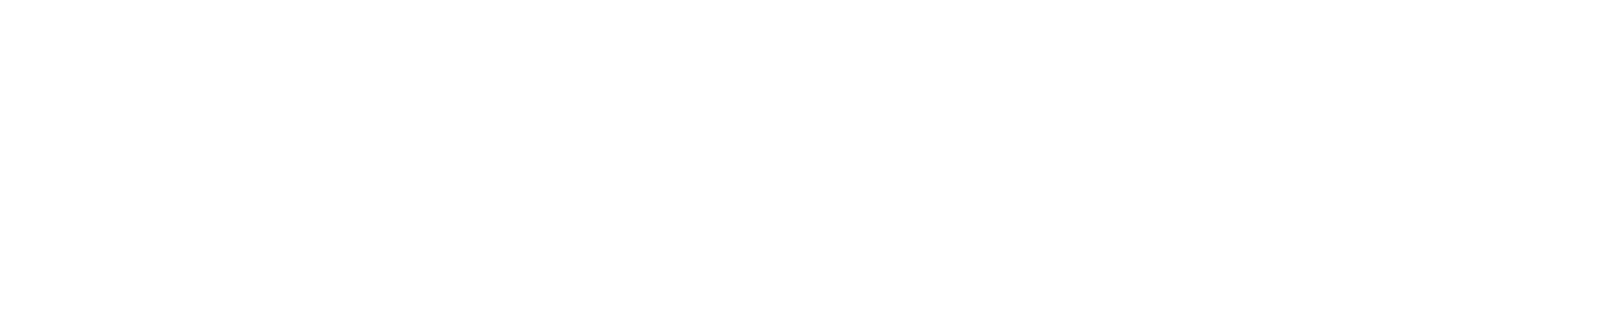 M7Movelaria - Referência em soluções para movelaria personalizada.